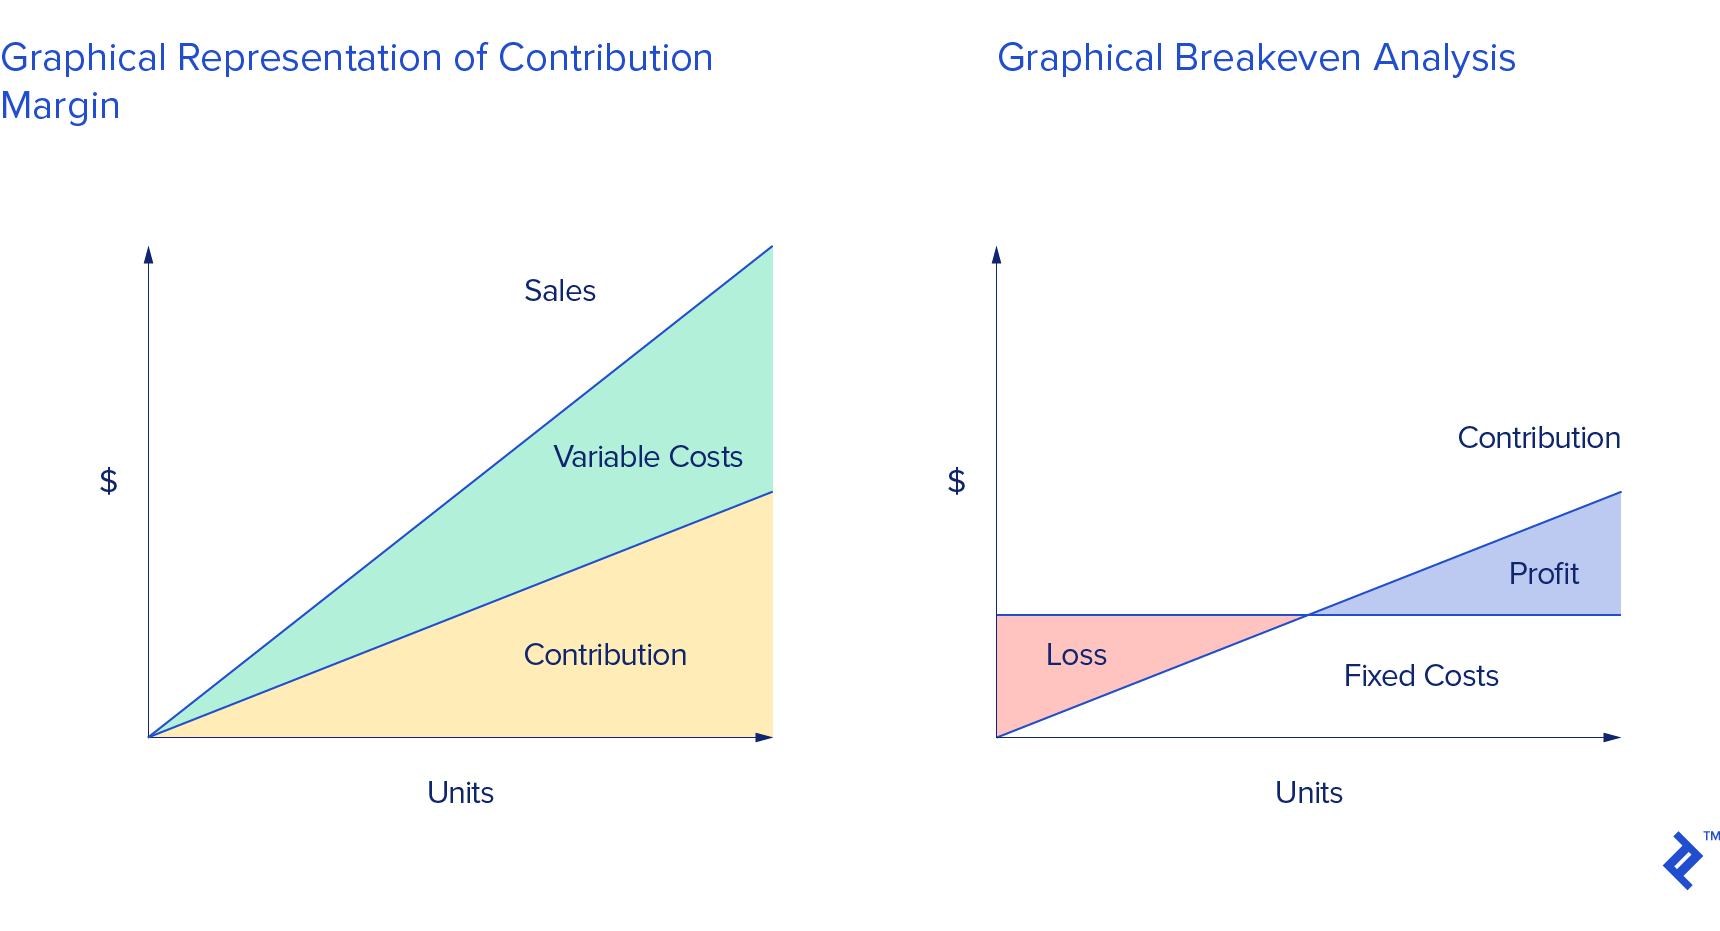 左边是边际贡献的图形表示，右边是盈亏平衡分析的图形表示